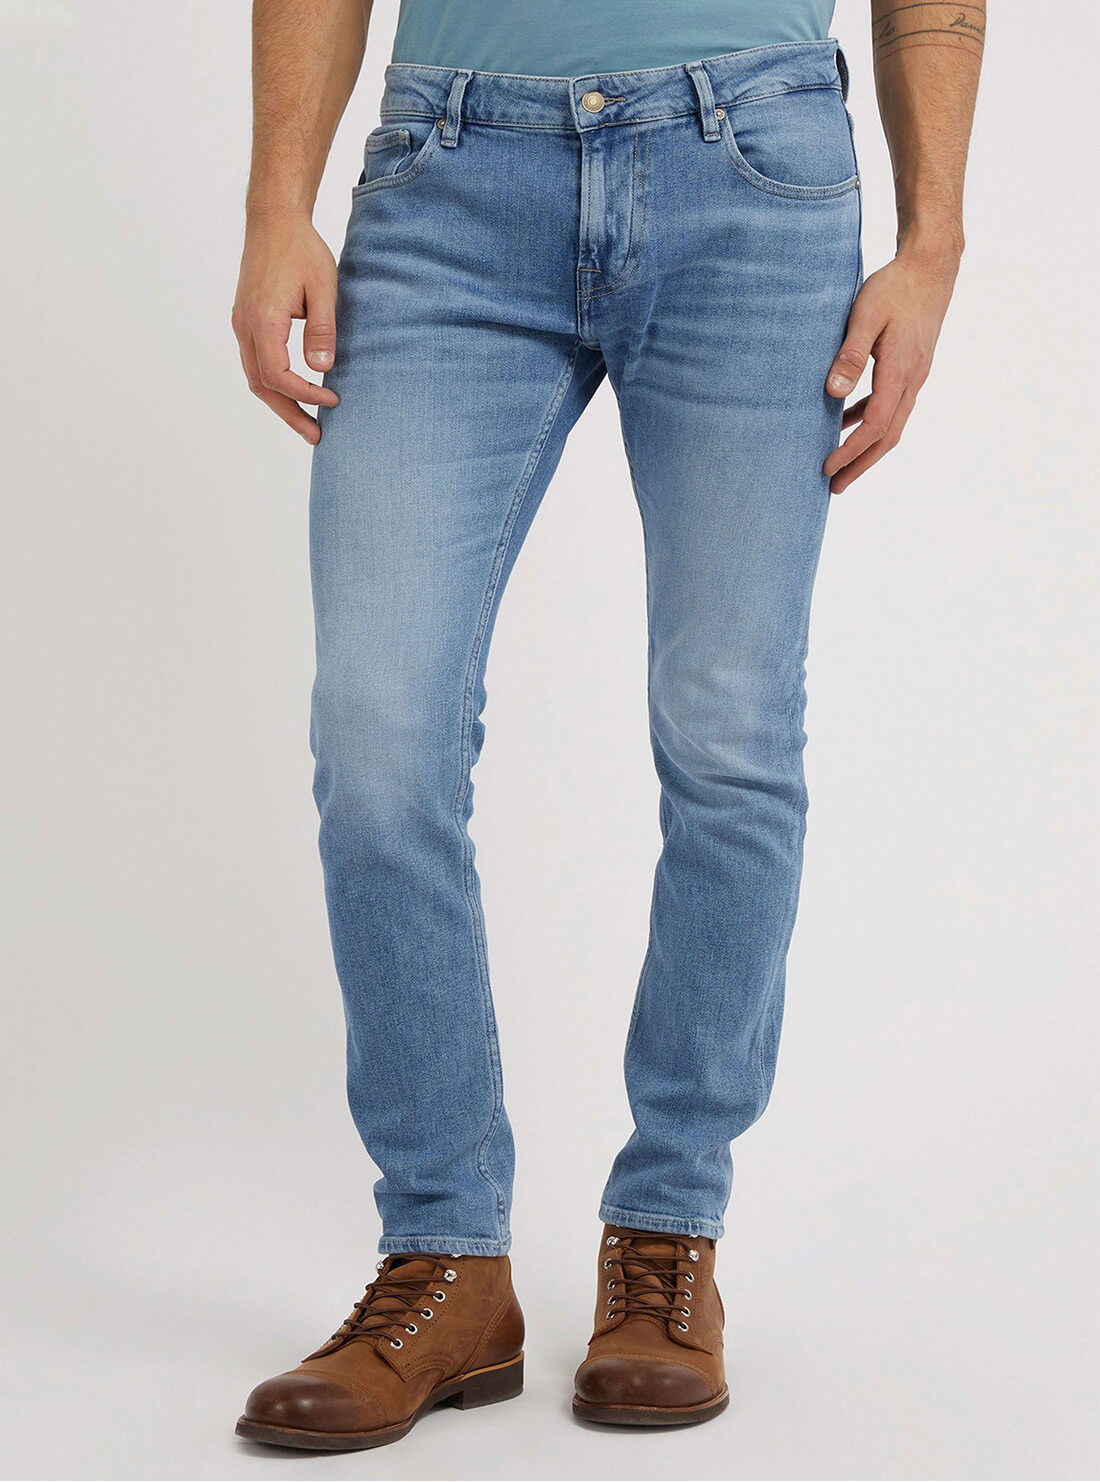 Light Blue Miami Denim Jeans | GUESS Men's Apparel | front view